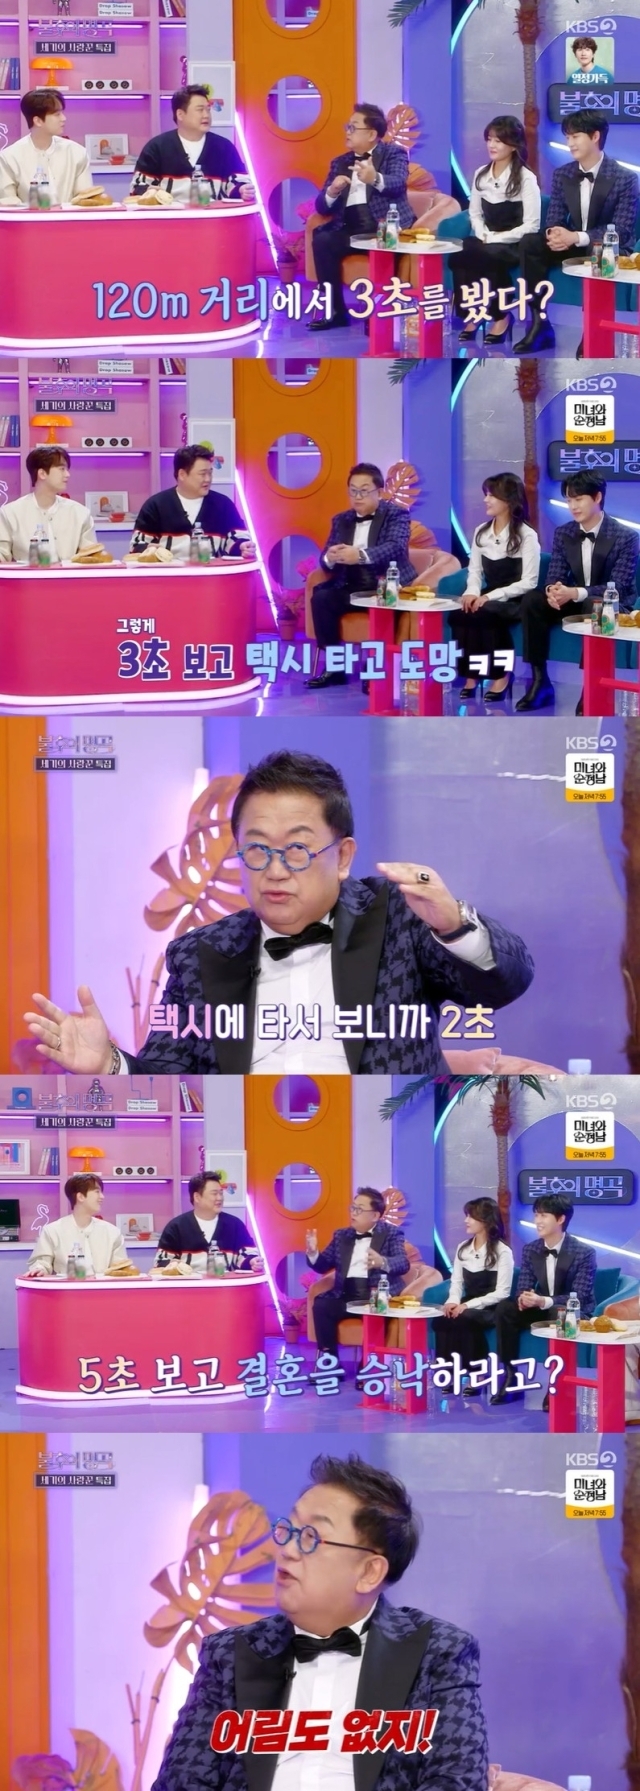 KBS 2TV '불후의 명곡' 방송 화면